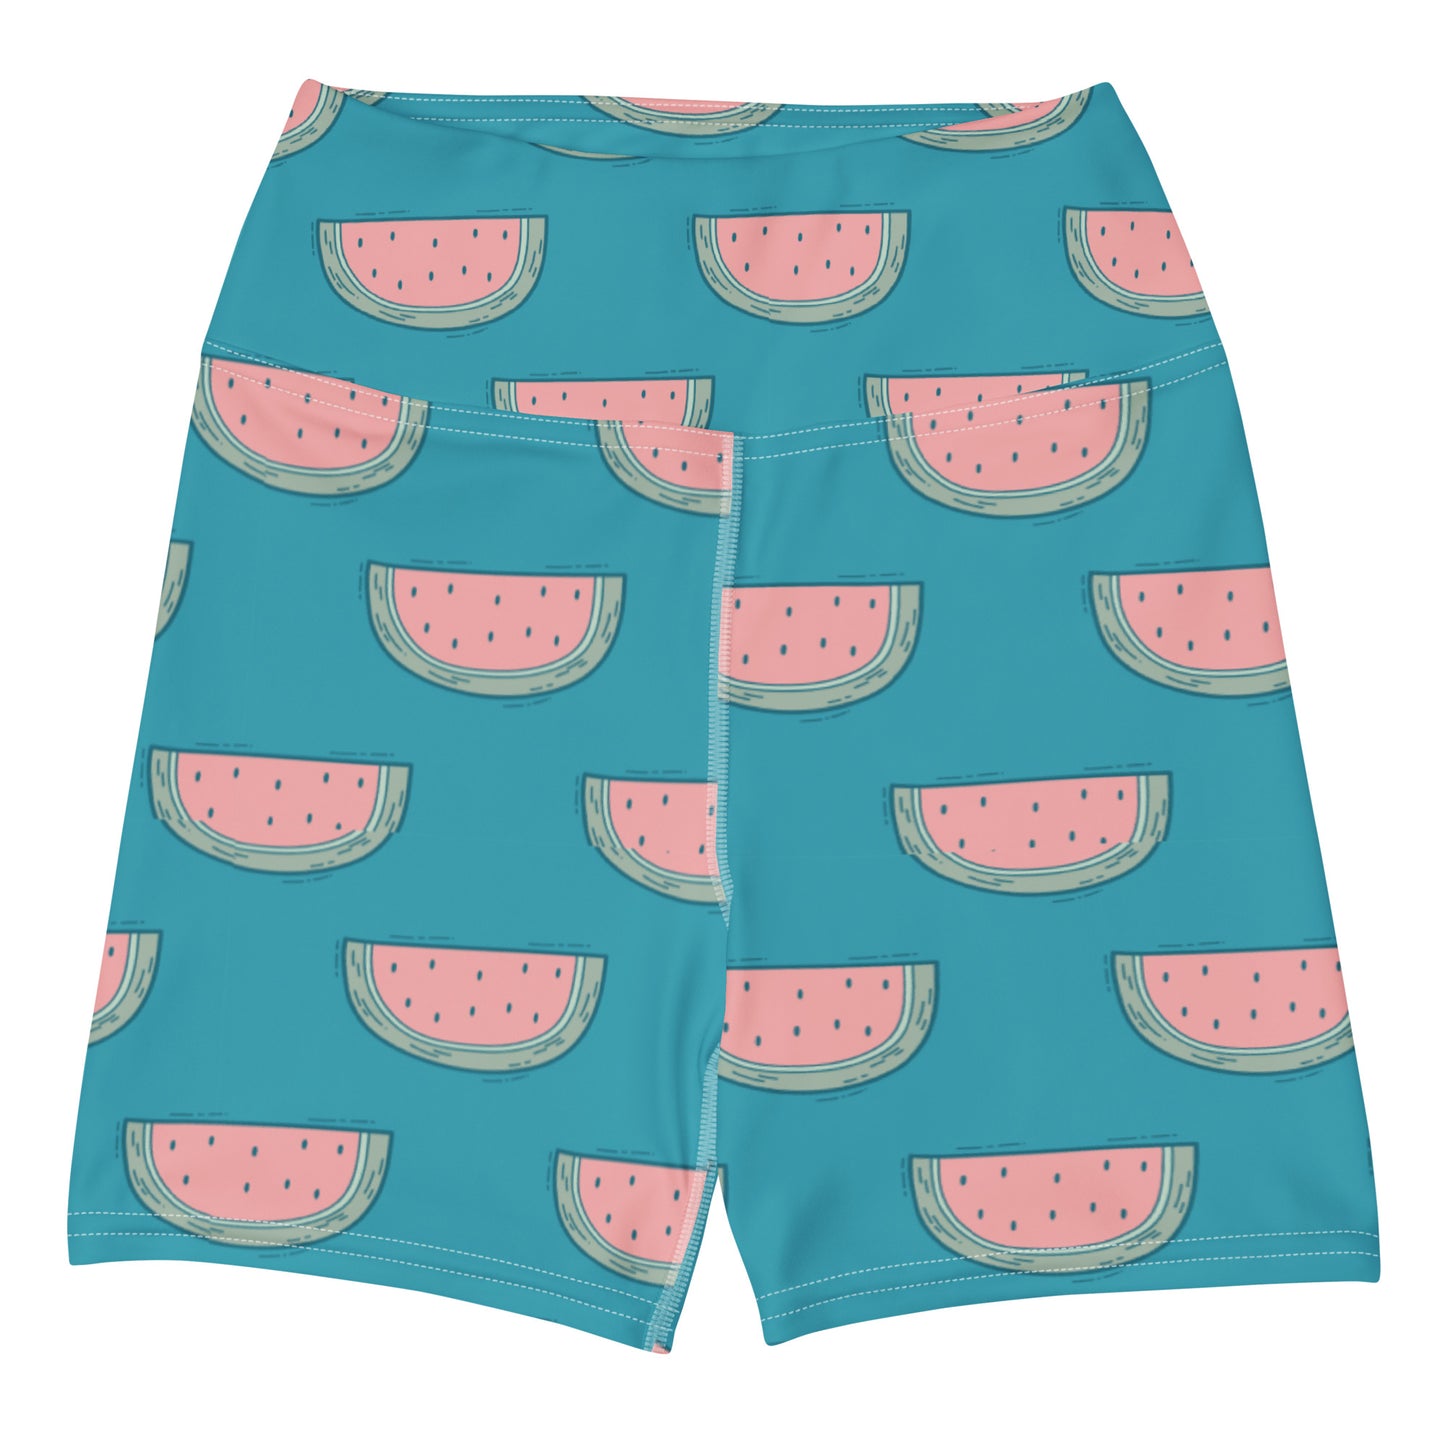 FYD Mini Yoga Shorts in watermelon summer